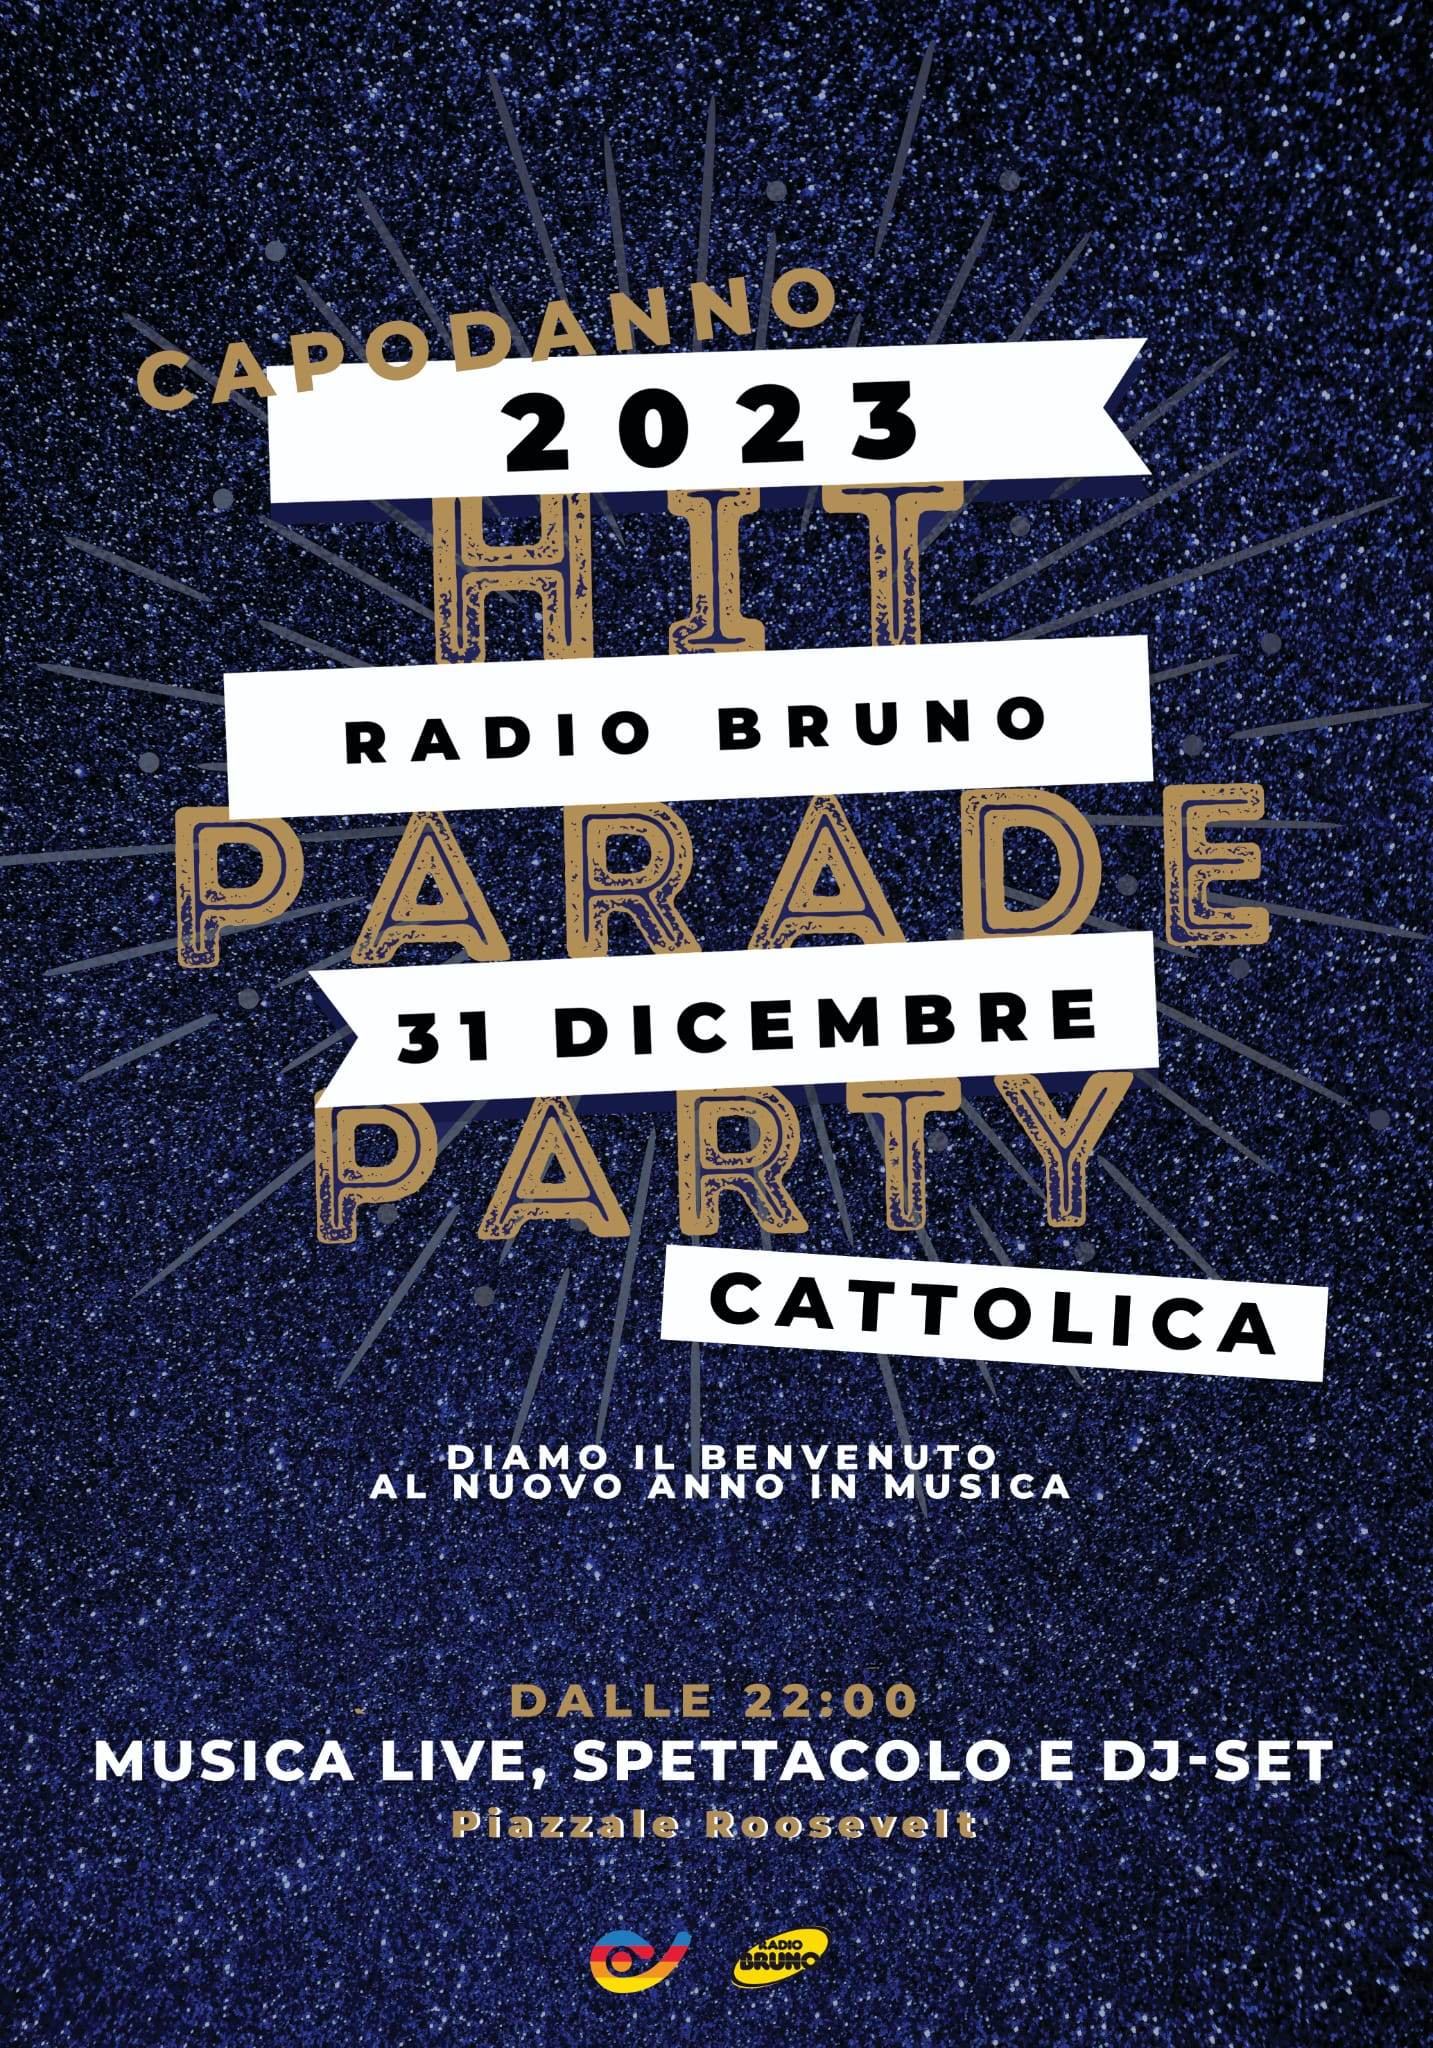 Capodanno con radio Bruno, locandina evento in blu e oro con testo "Hit Parade party" format musicale di radio Bruno